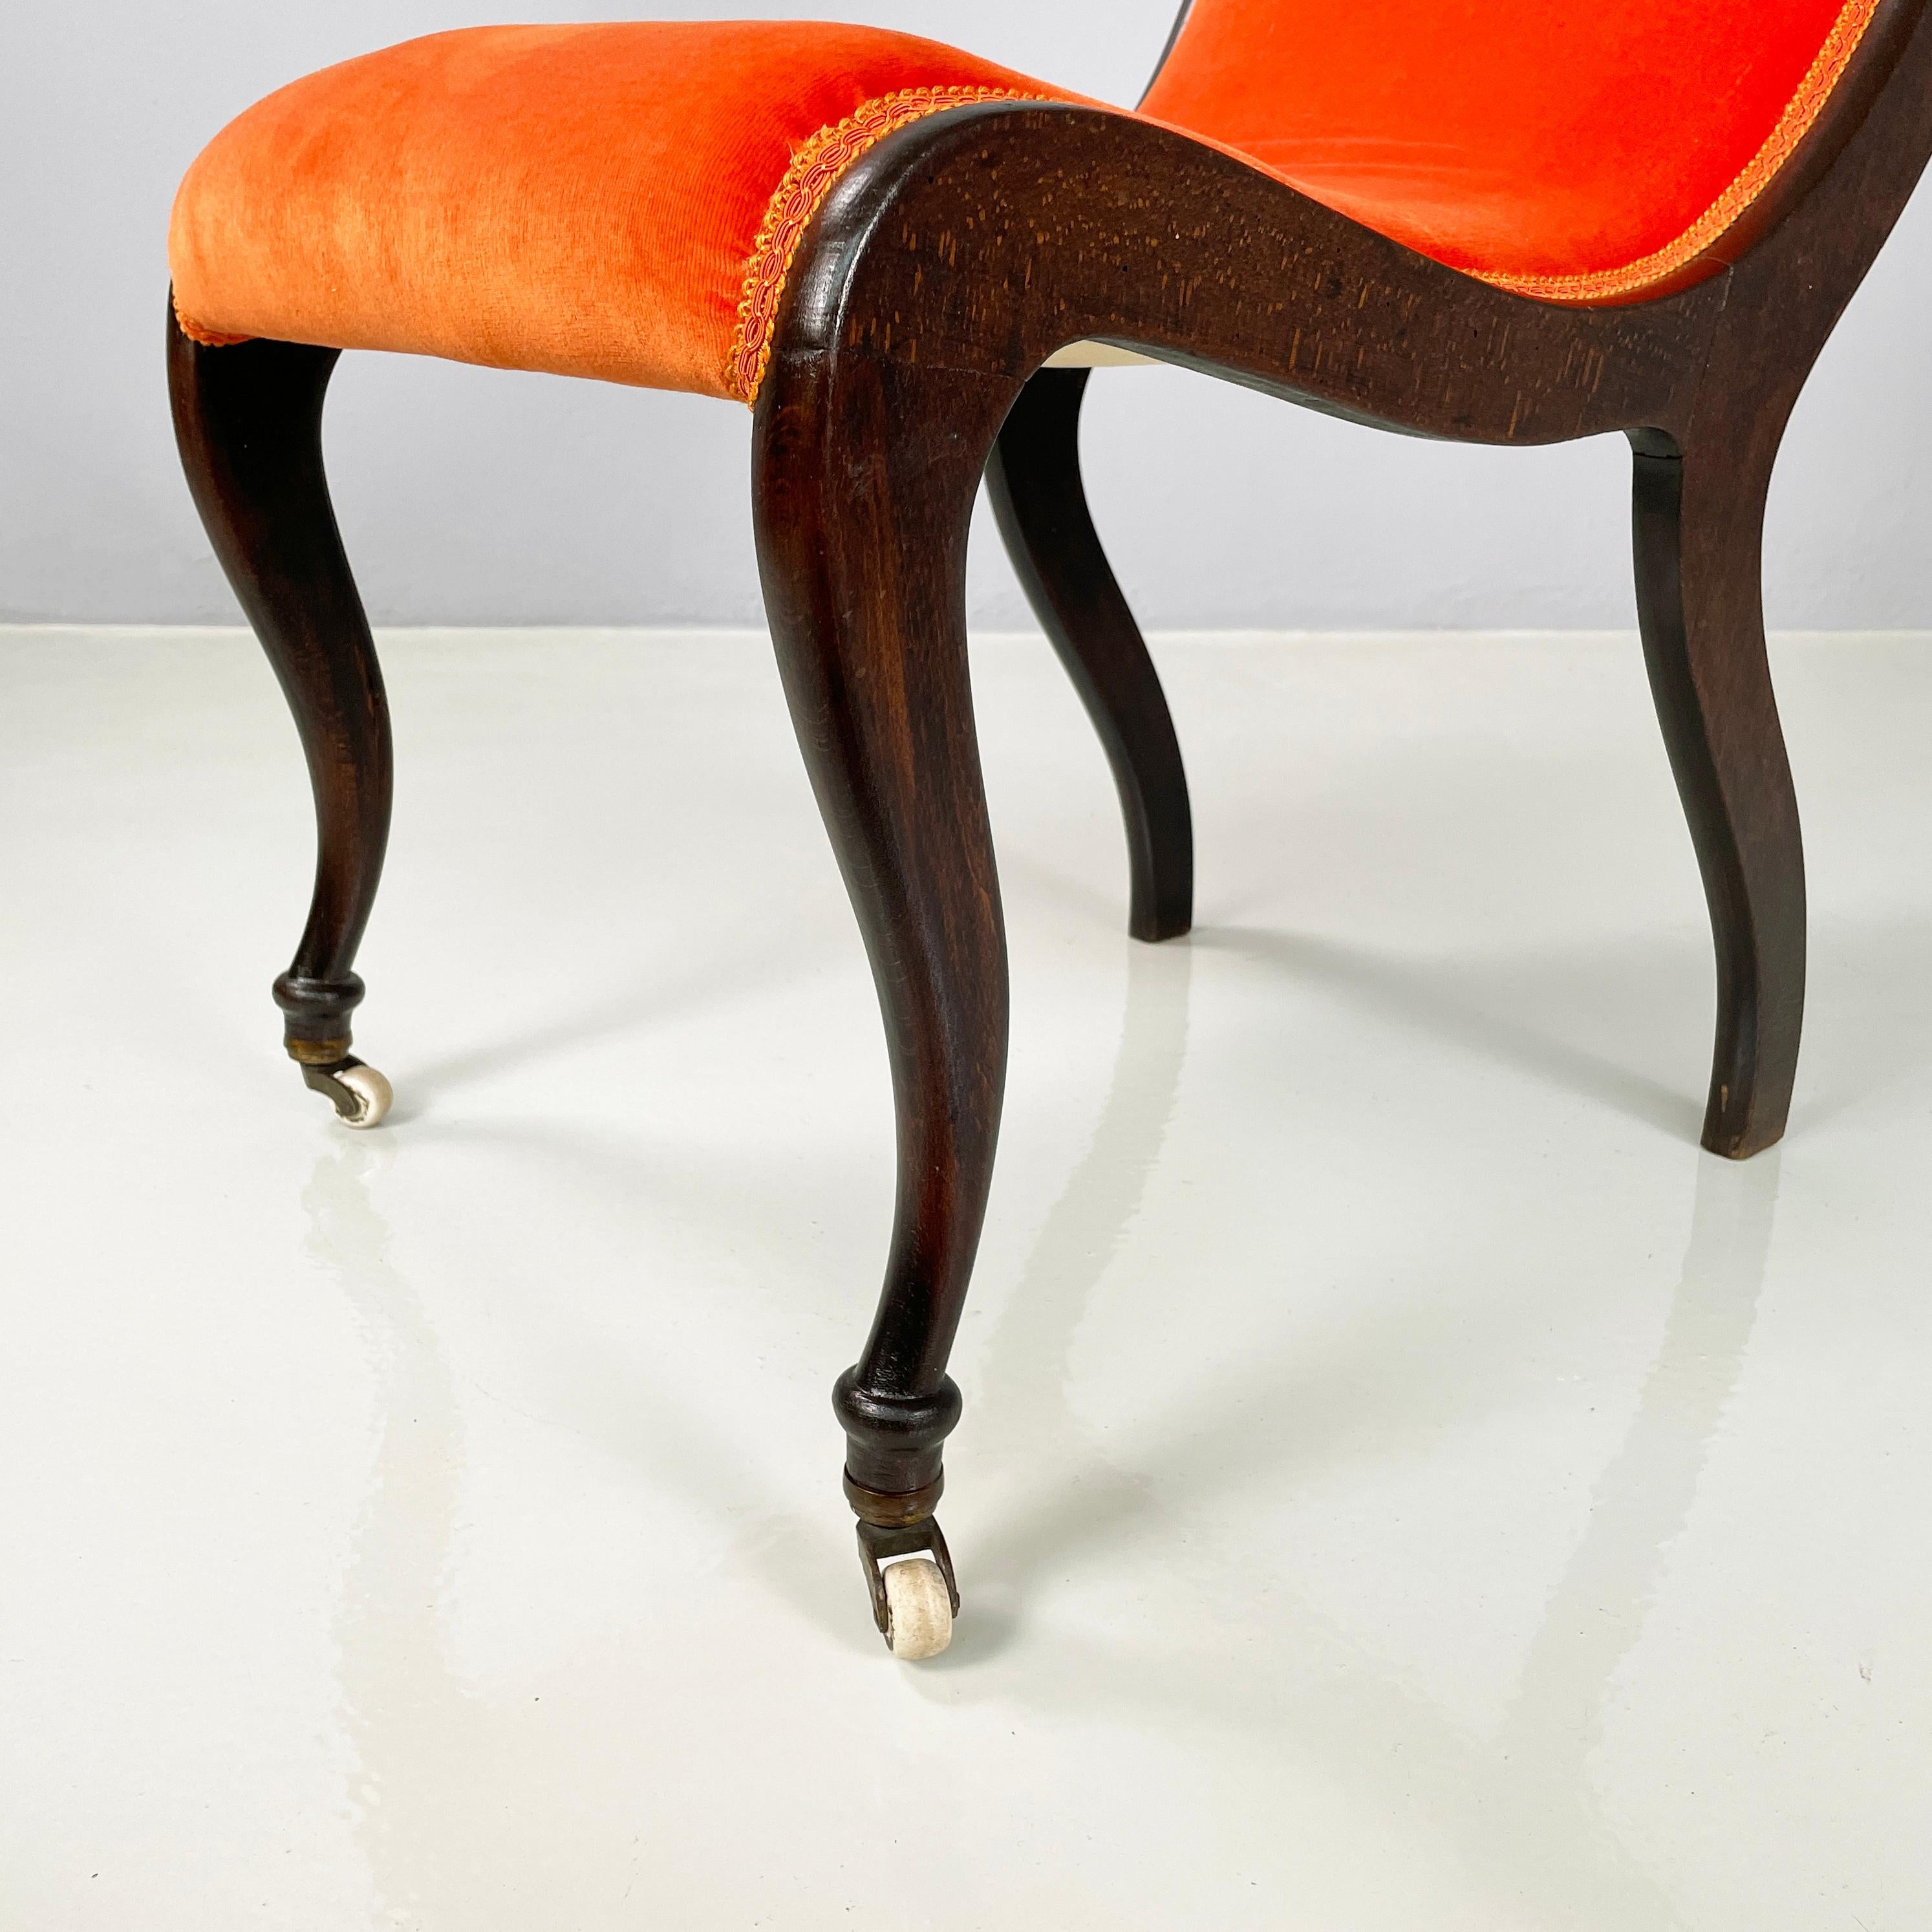 Danish mid-century modern Chair in orange velvet and dark wood, 1950s For Sale 11